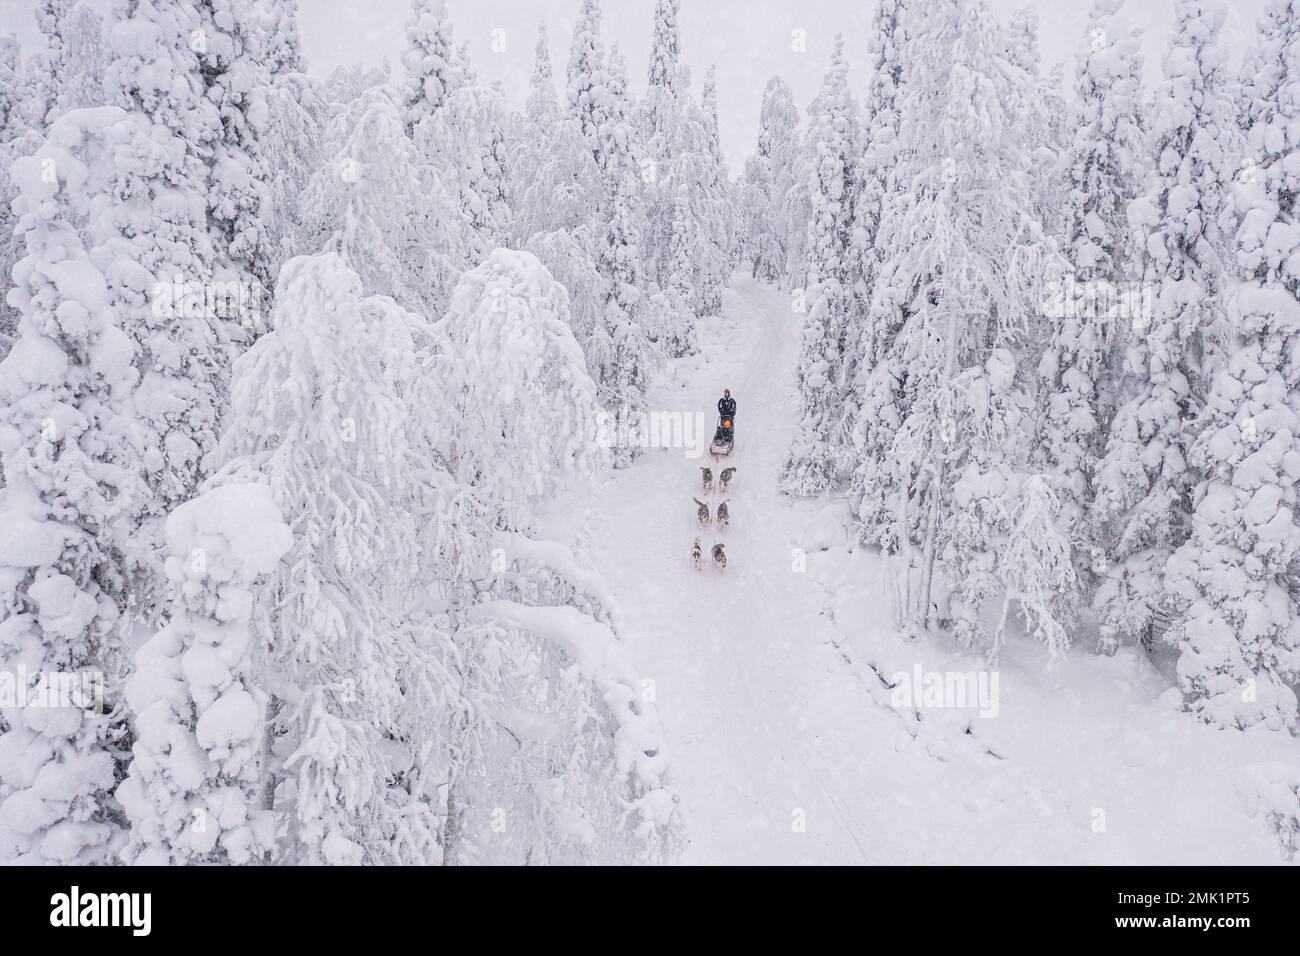 Blick von oben auf Menschen, die im verschneiten Wald während eines Winterschneefalls Hundeschlittenfahren, Lappland, Finnland Stockfoto